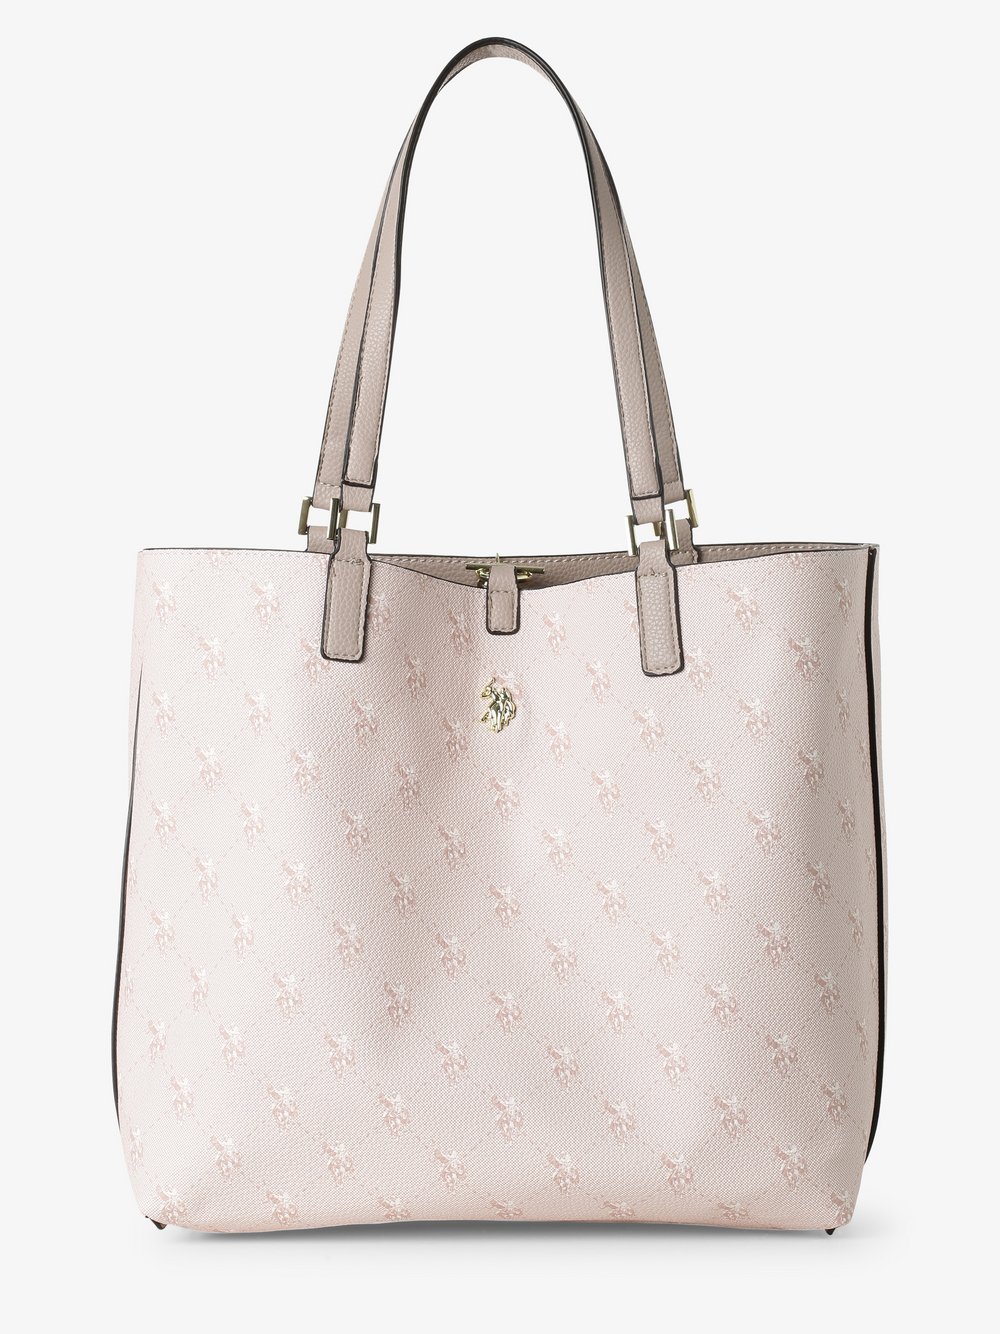 U.S. Polo Assn. - Damska dwustronna torba shopper z torebką wewnętrzną, różowy